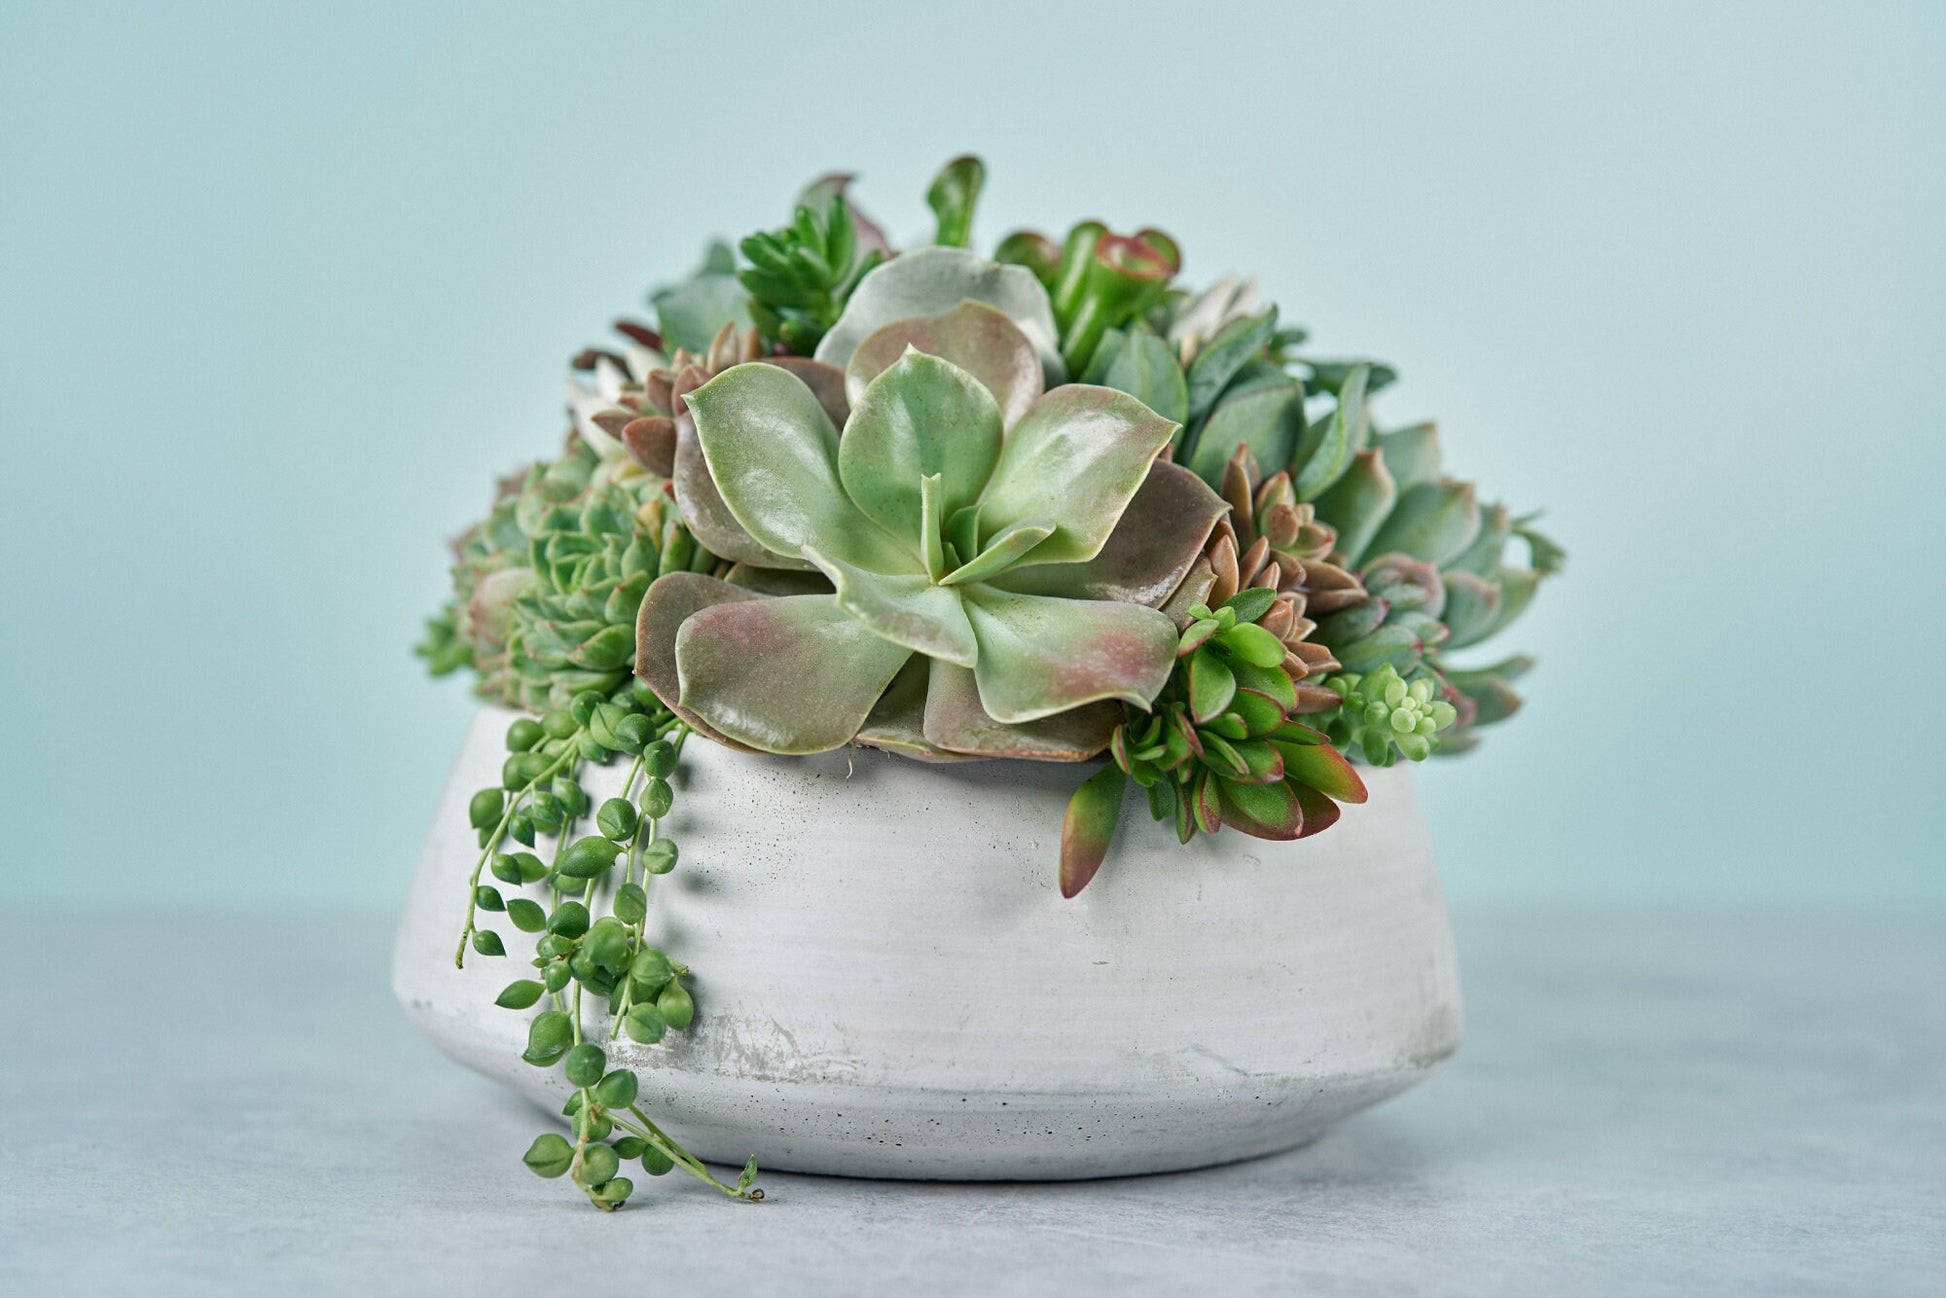 Concrete Bowl Succulent Arrangement | Floral Centerpiece | Earth Friendly Event Table Decor